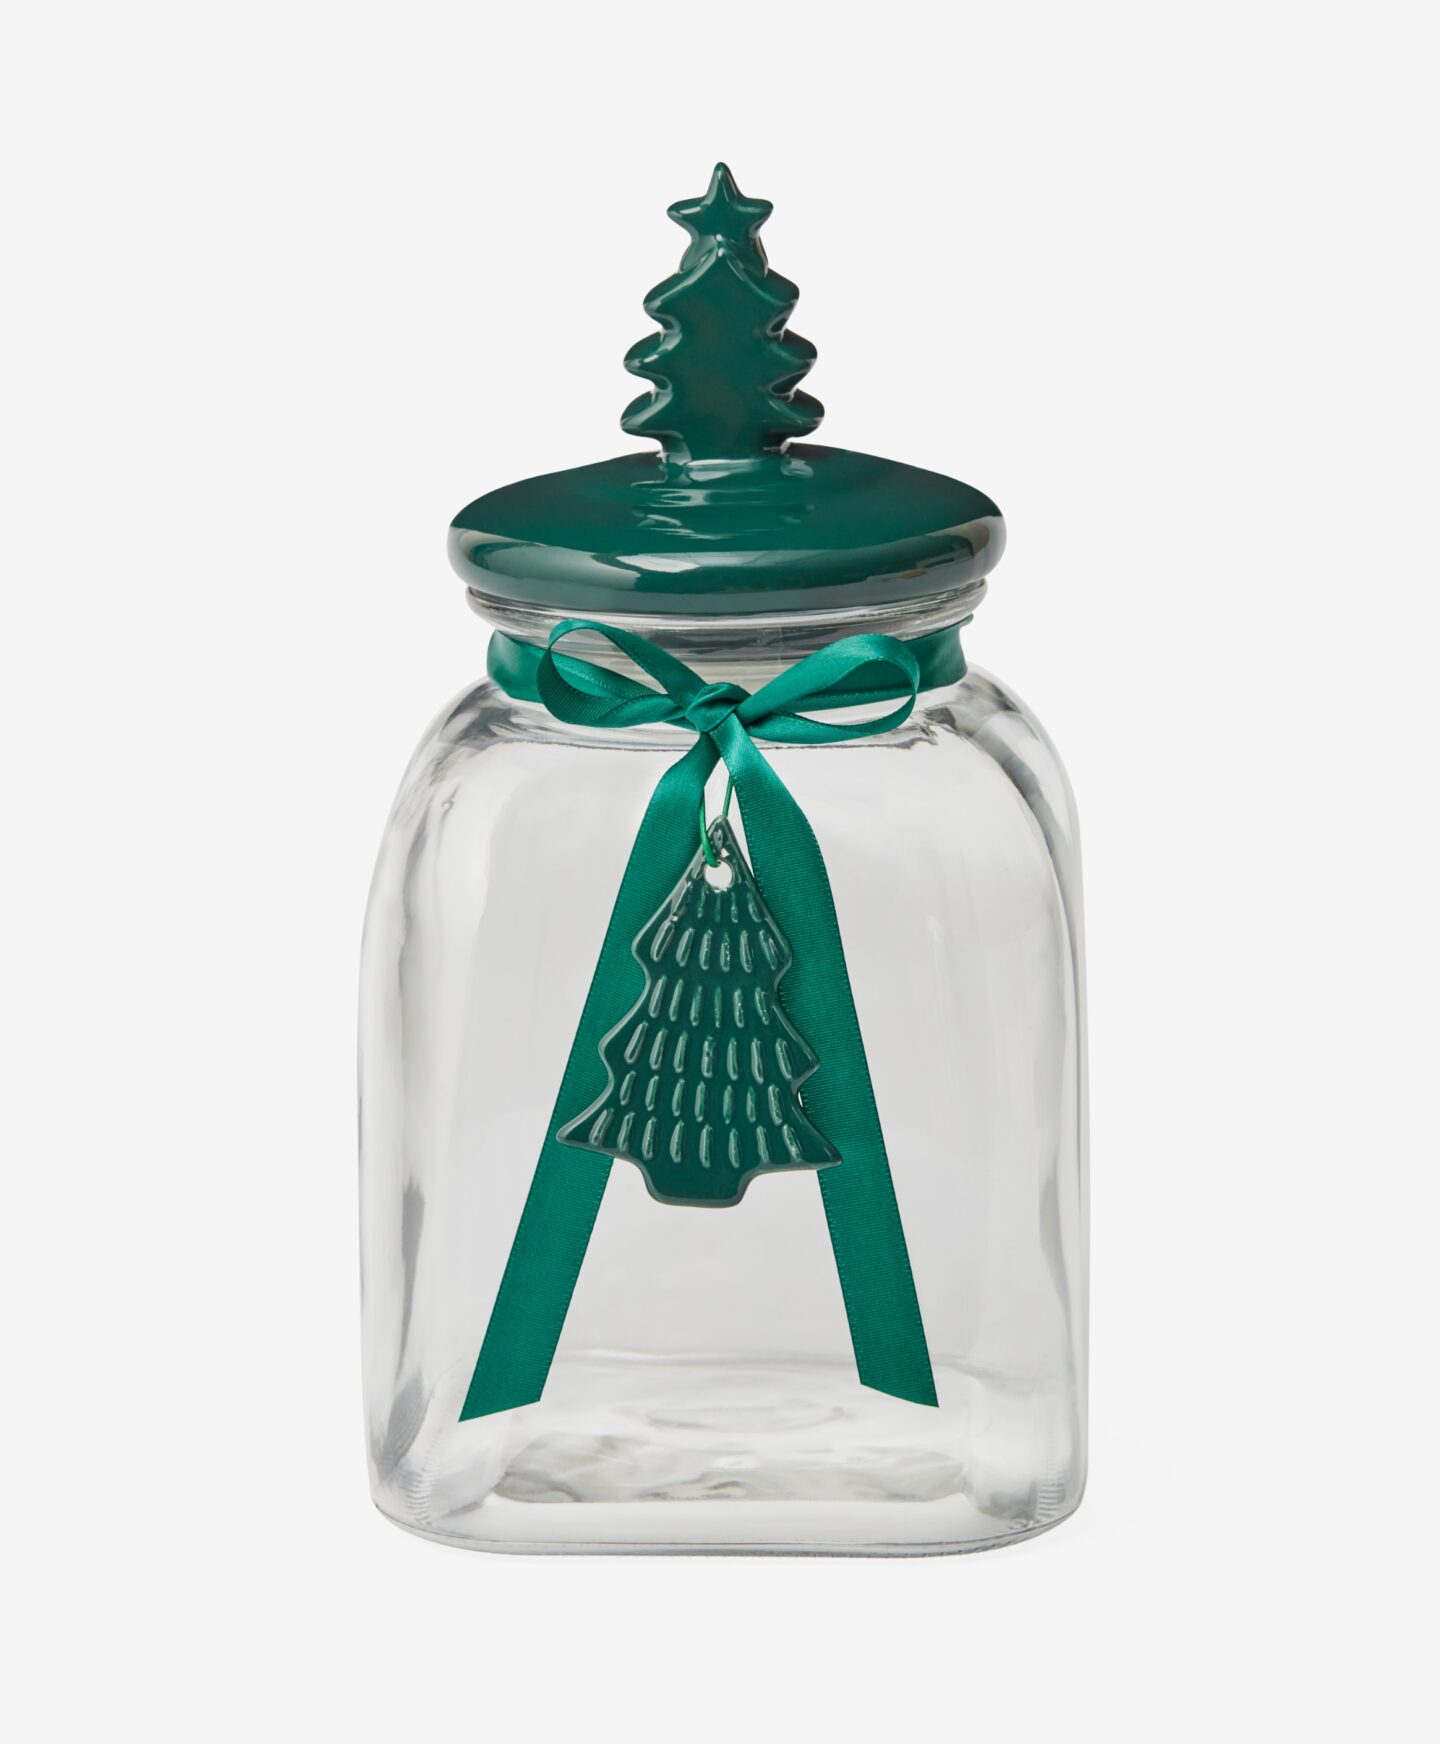 Βάζο με κεραμικό καπάκι σε σχήμα χριστουγεννιάτικου δέντρου, διάφανο, πράσινο, 3,5 l